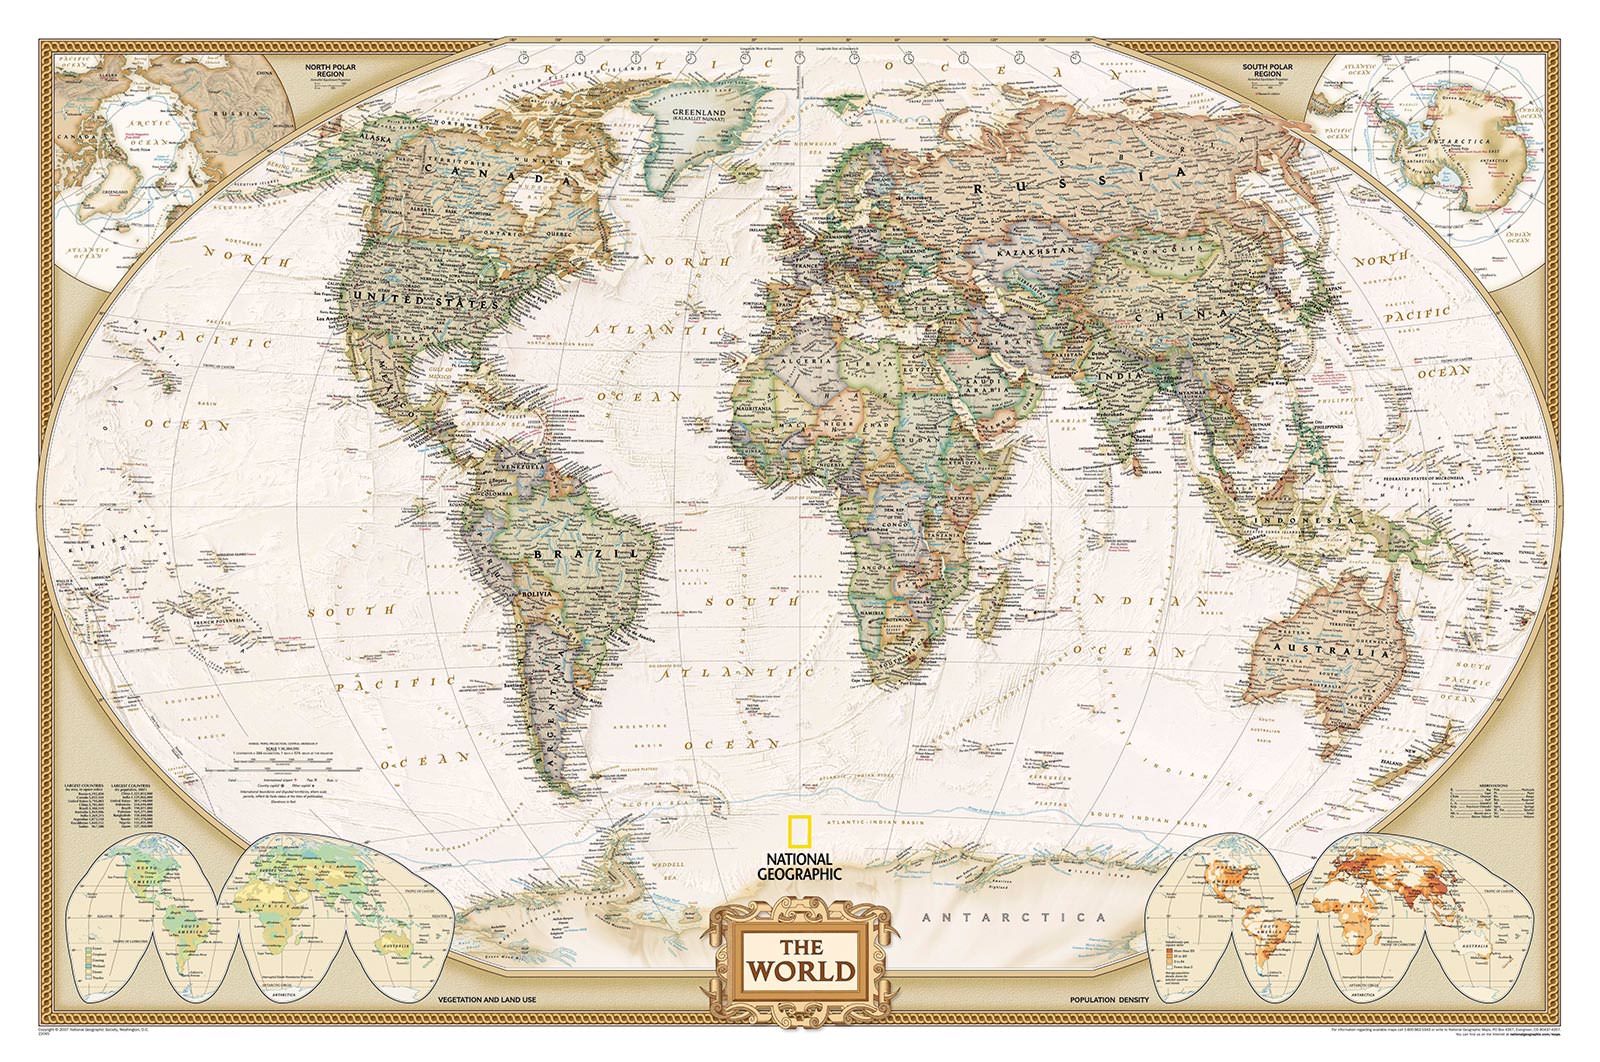 Карта мира - заказать печать фотообоев в интернет магазин arte.ru. Заказатьобои Карта мира (1925)